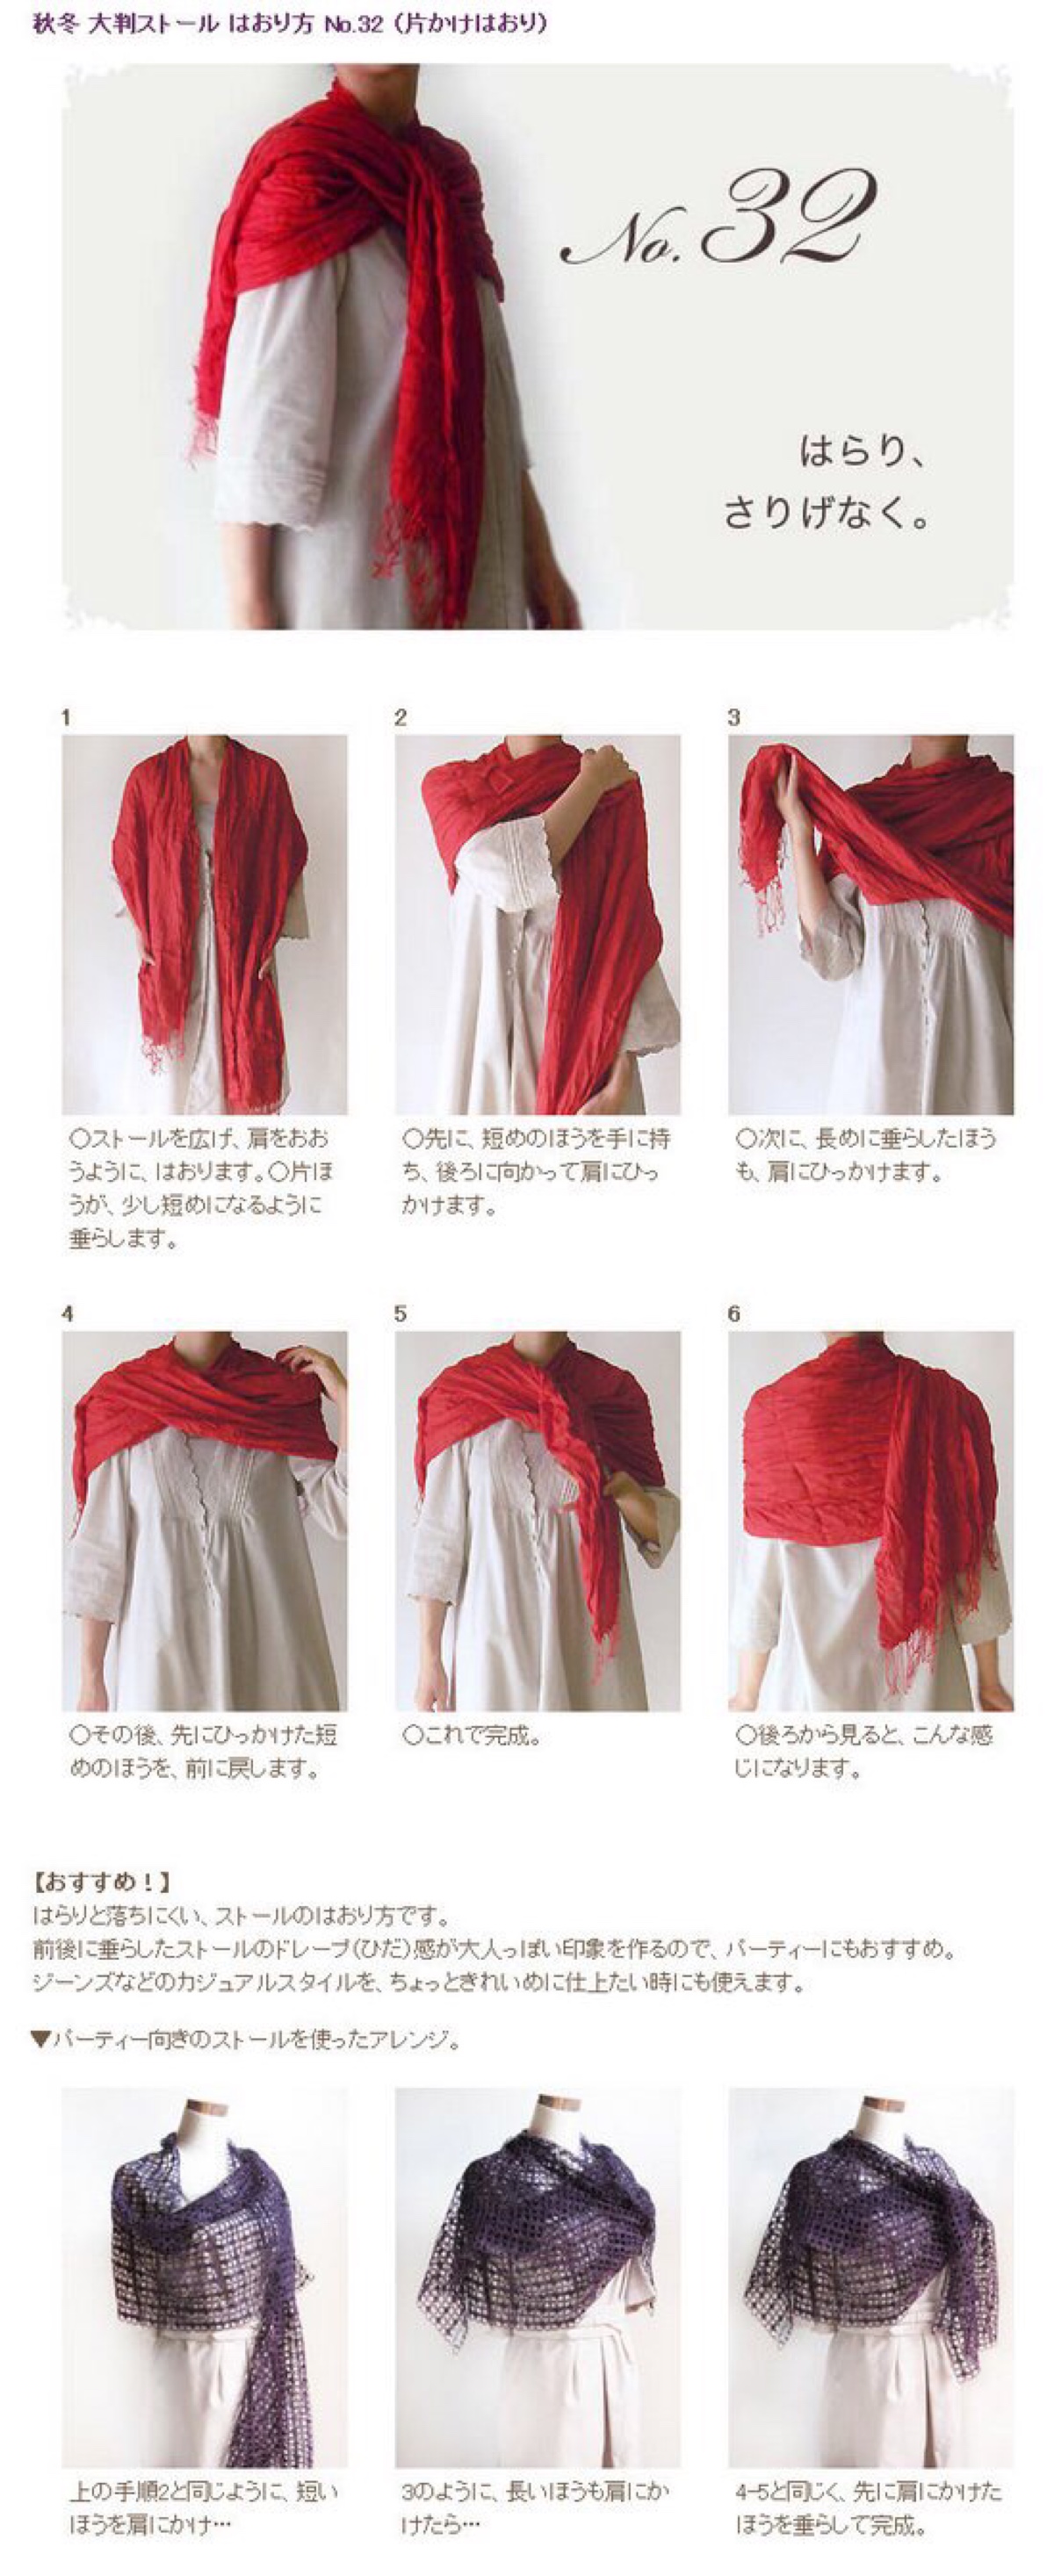 冬季围巾的各种围法女图片